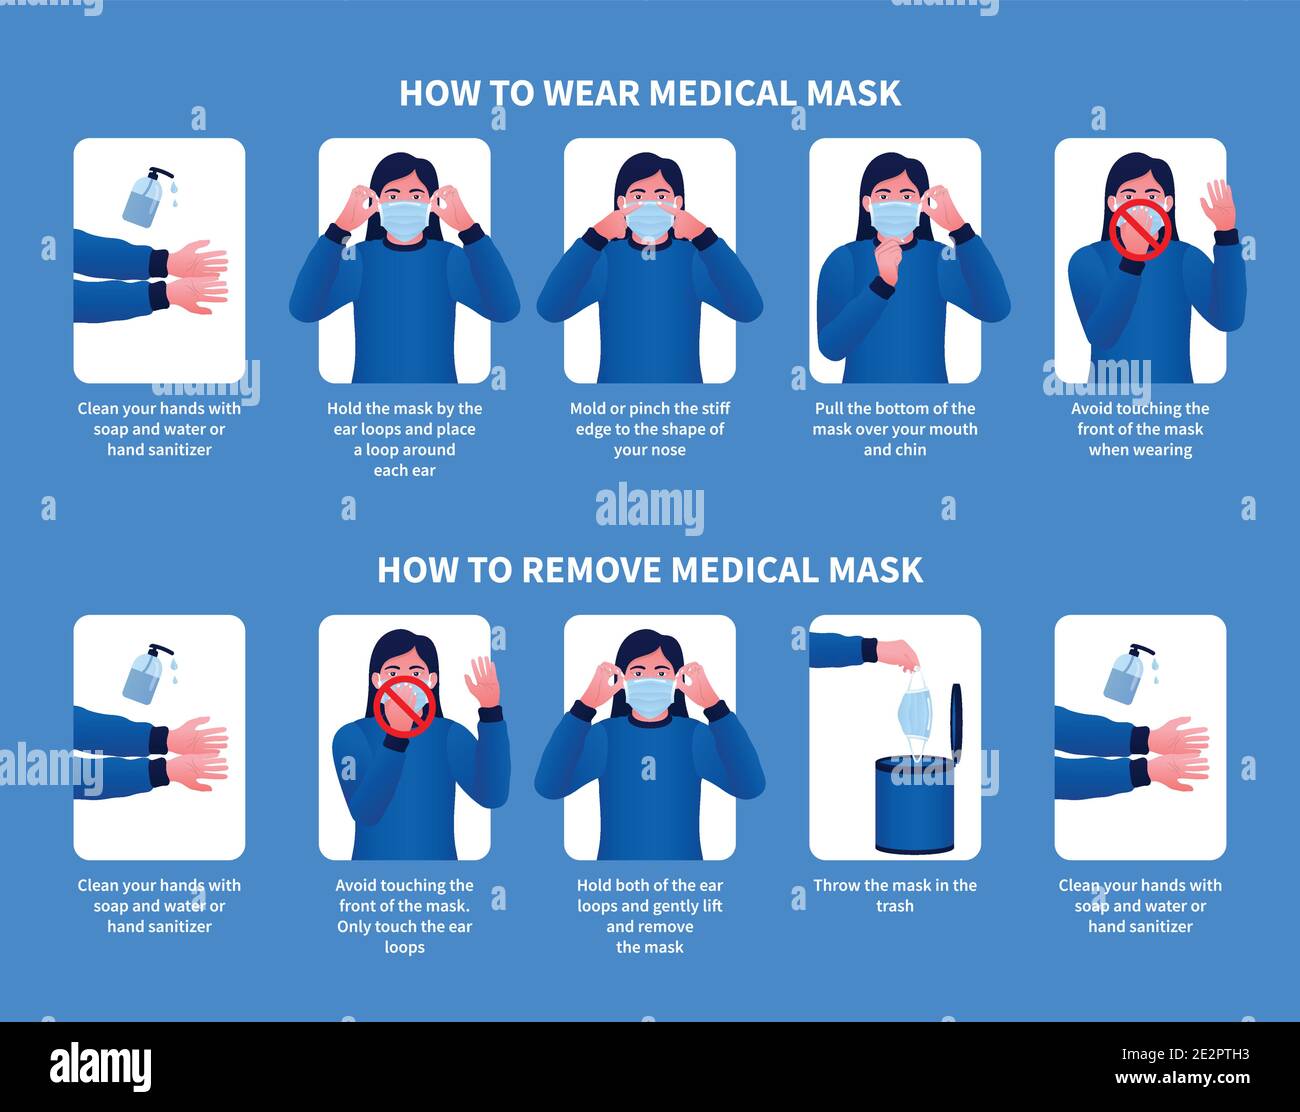 Come indossare e rimuovere maschera medica design moderno. Illustrazione infografica dettagliata di come utilizzare e rimuovere una maschera chirurgica. Illustrazione Vettoriale